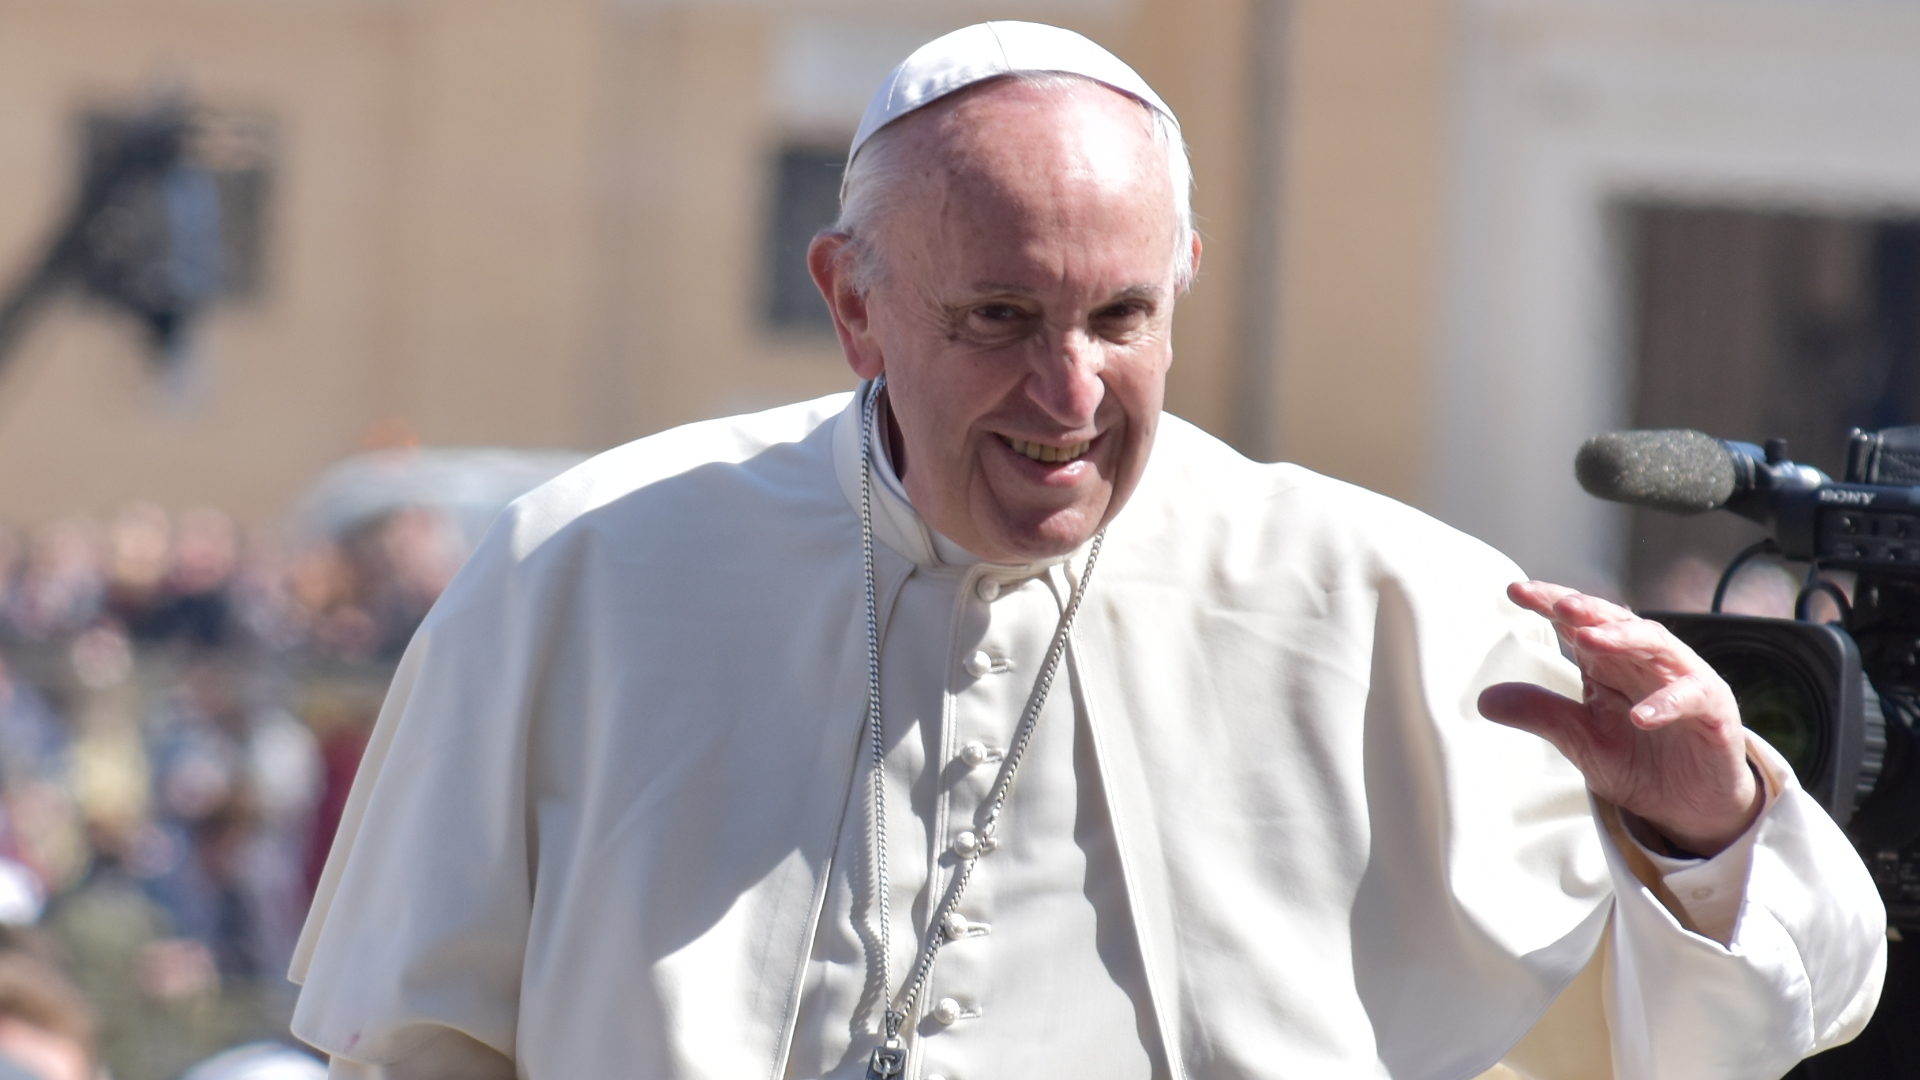 Zwist zwischen Katholiken: Braucht es einen Papst?